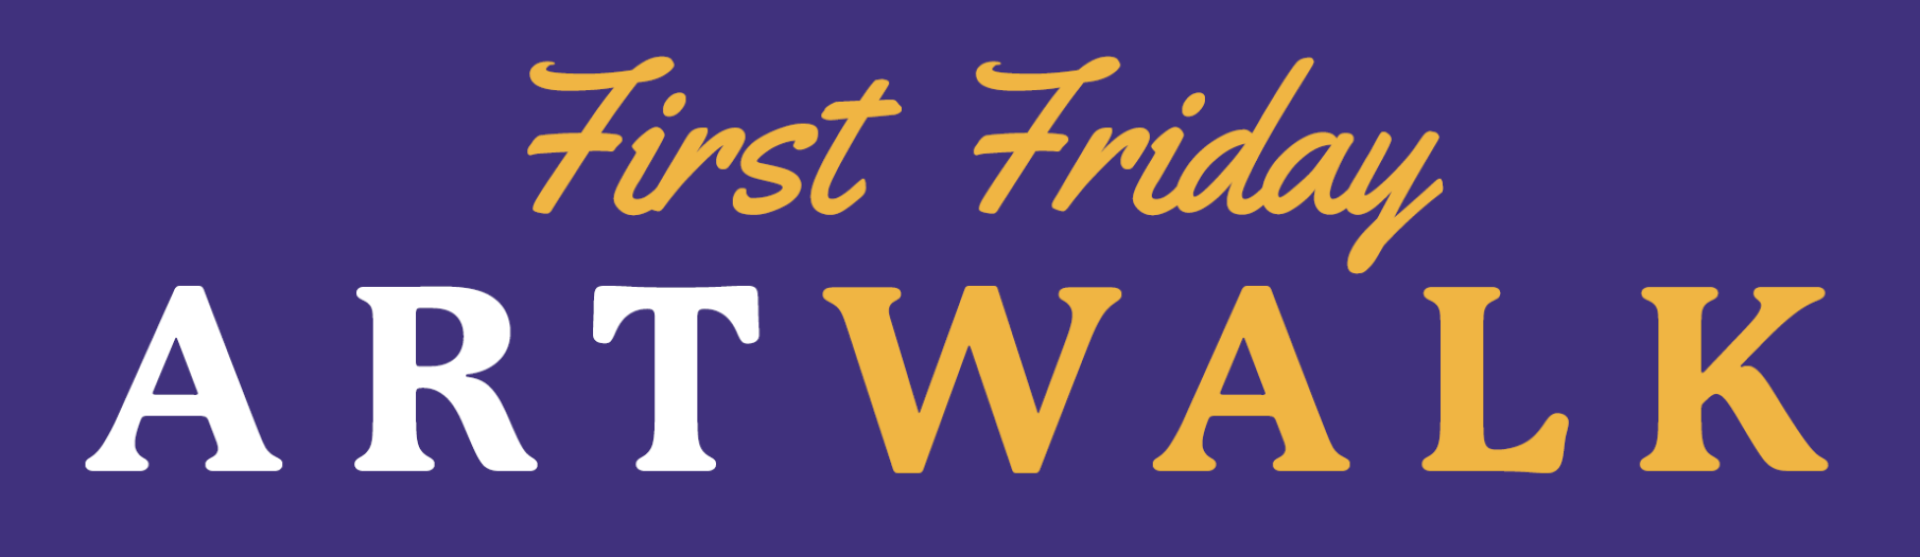 First Friday Art Walk Logo